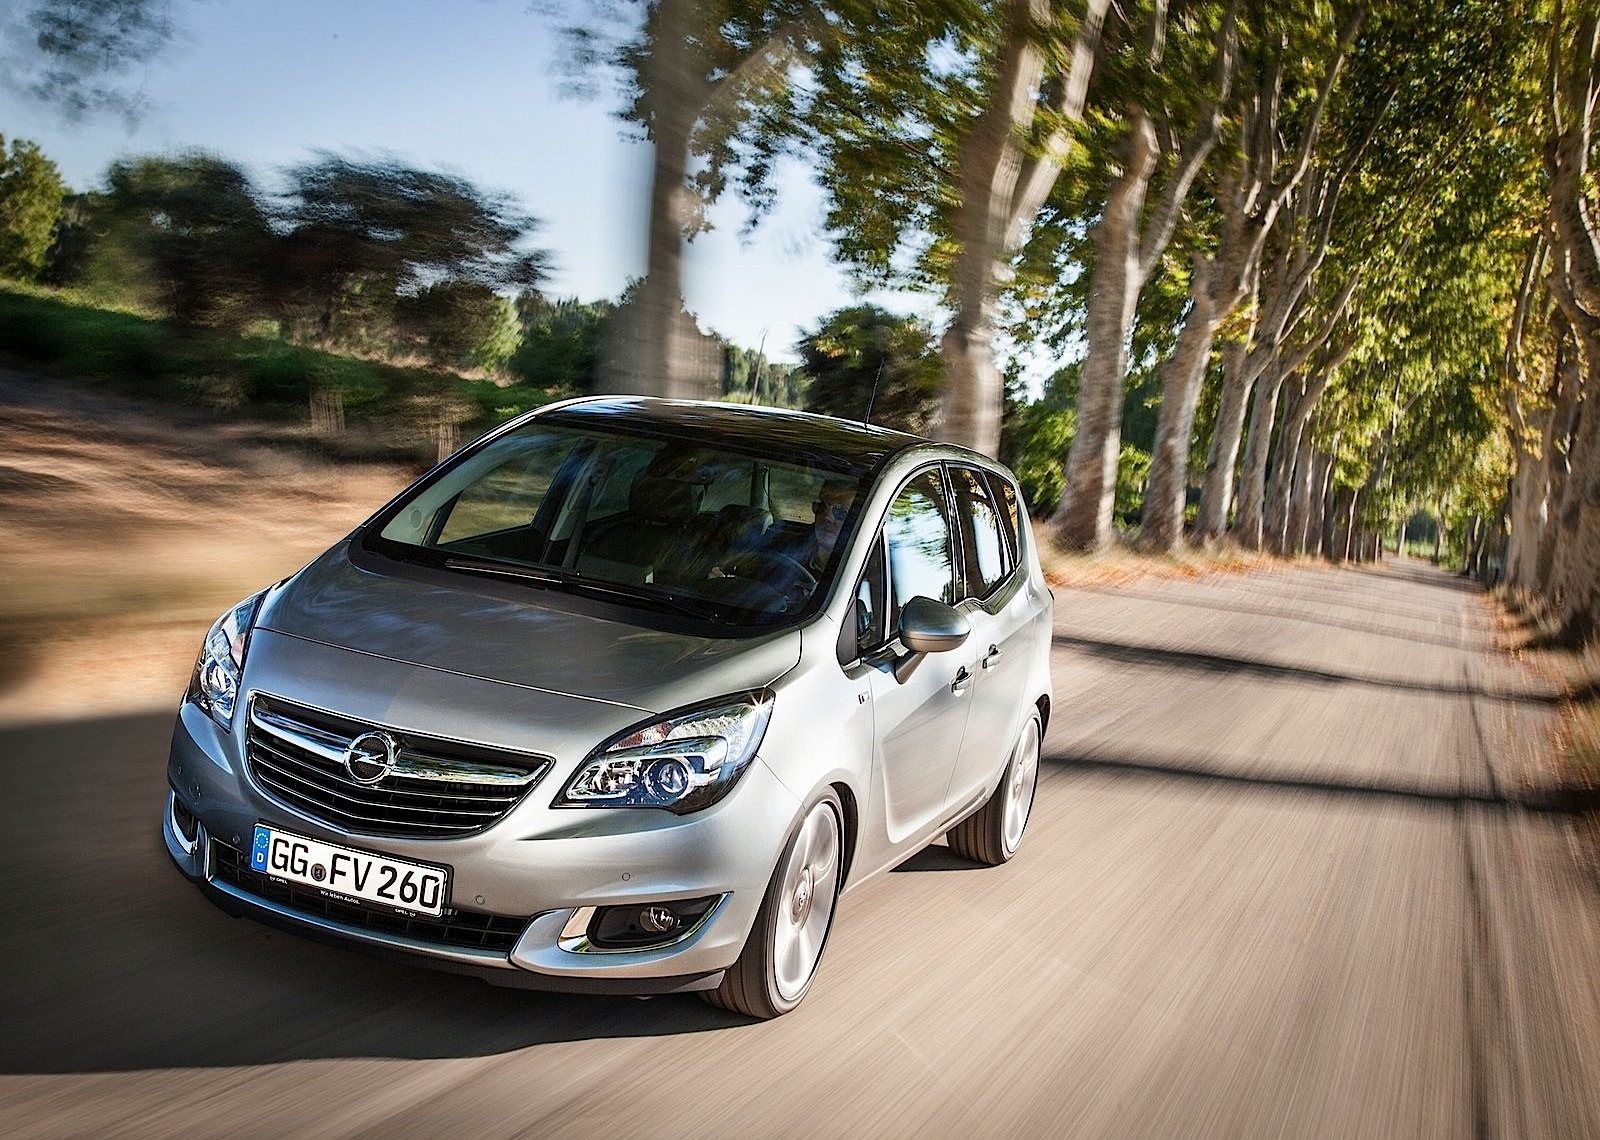 Opel Meriva 1.6 CDTi 136 ch (2014)